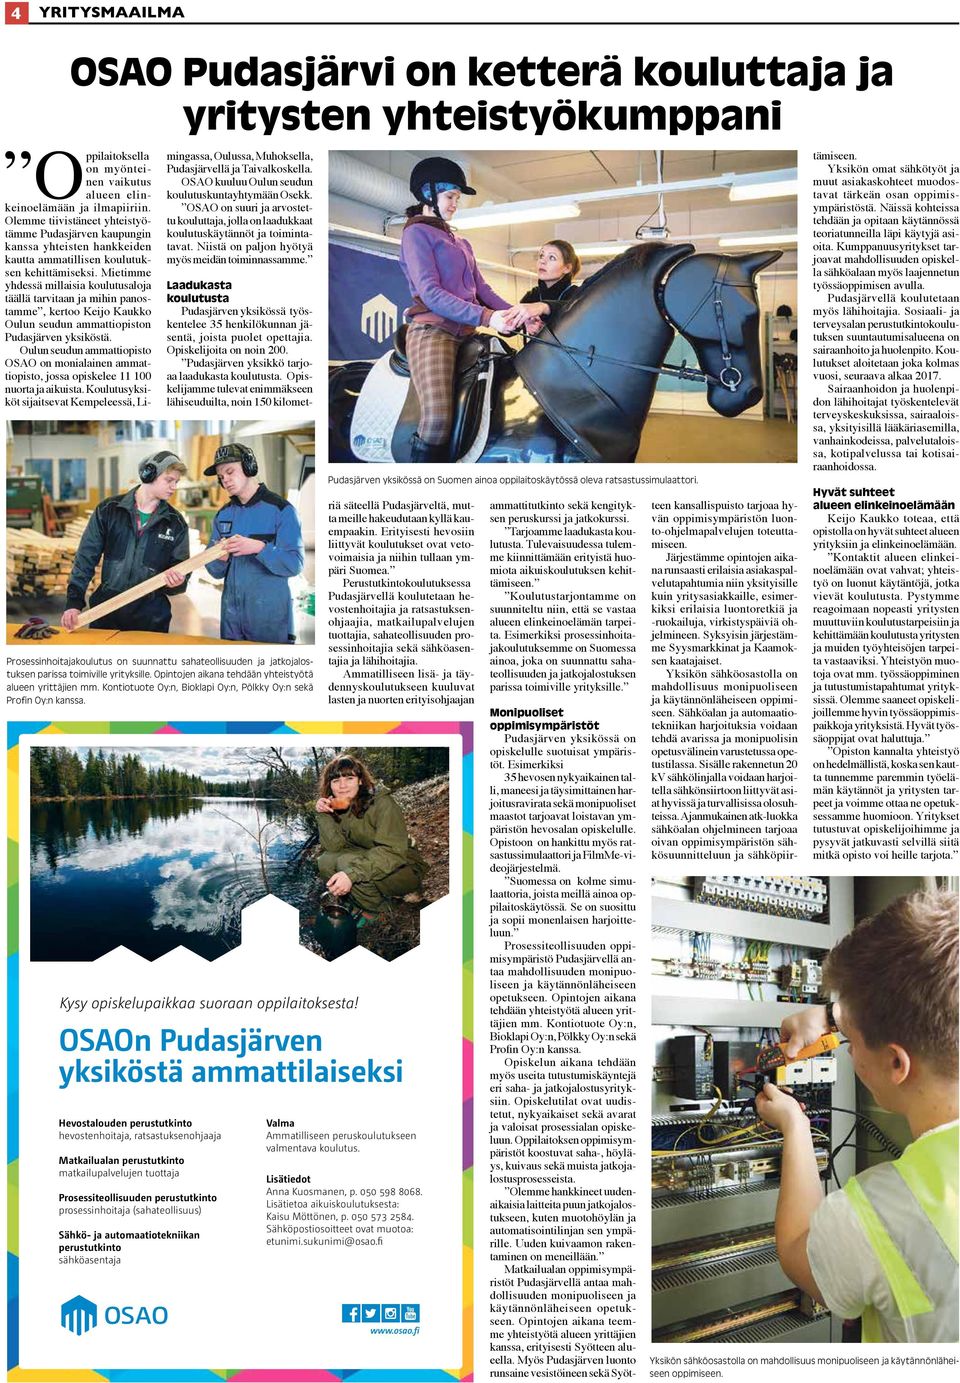 Mietimme yhdessä millaisia koulutusaloja täällä tarvitaan ja mihin panostamme, kertoo Keijo Kaukko Oulun seudun ammattiopiston Pudasjärven yksiköstä.